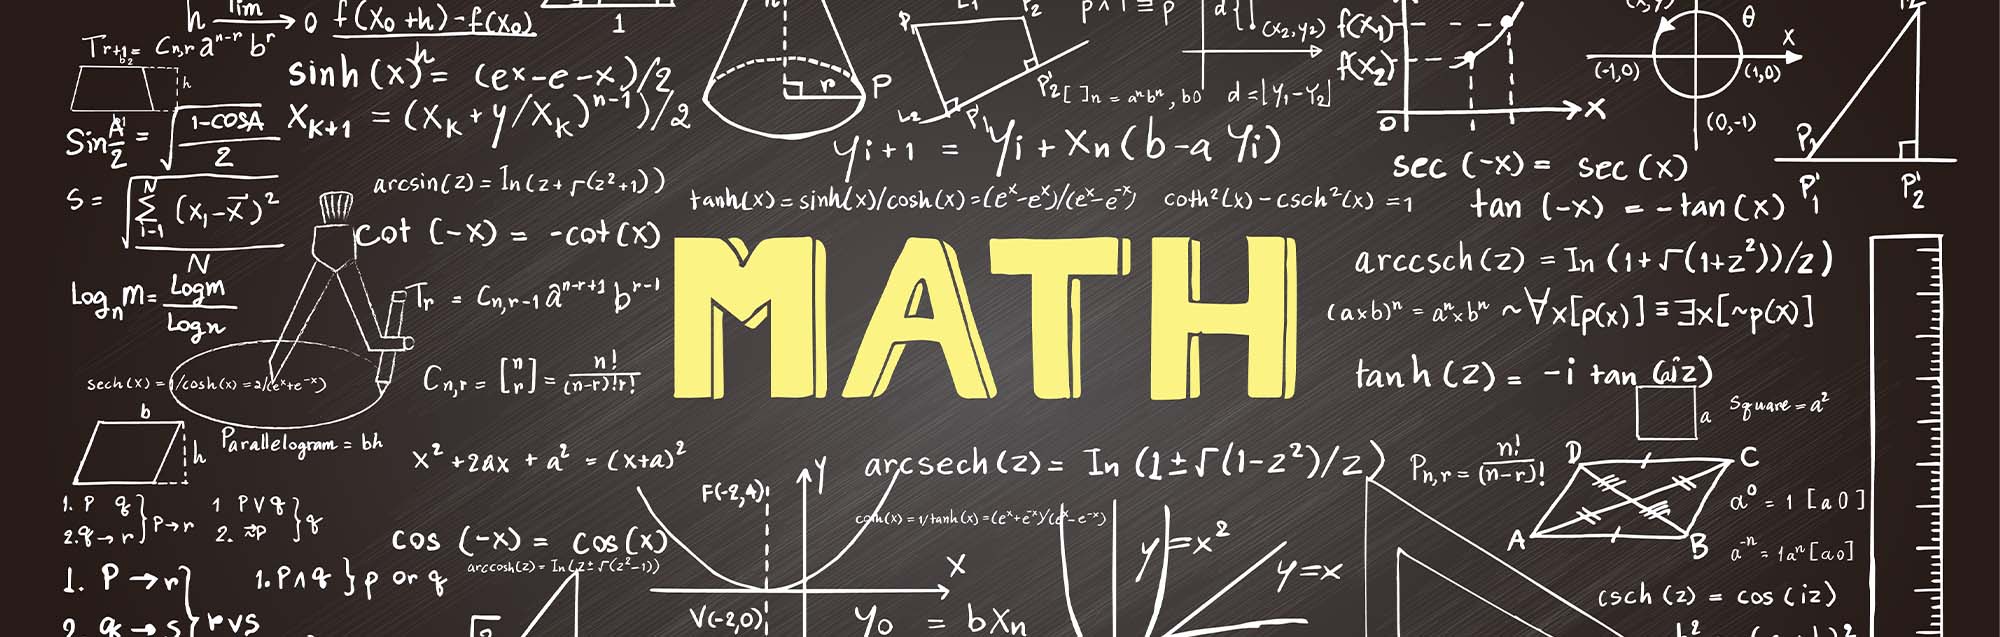 مبادئ وانواع التحليل في الرياضيات